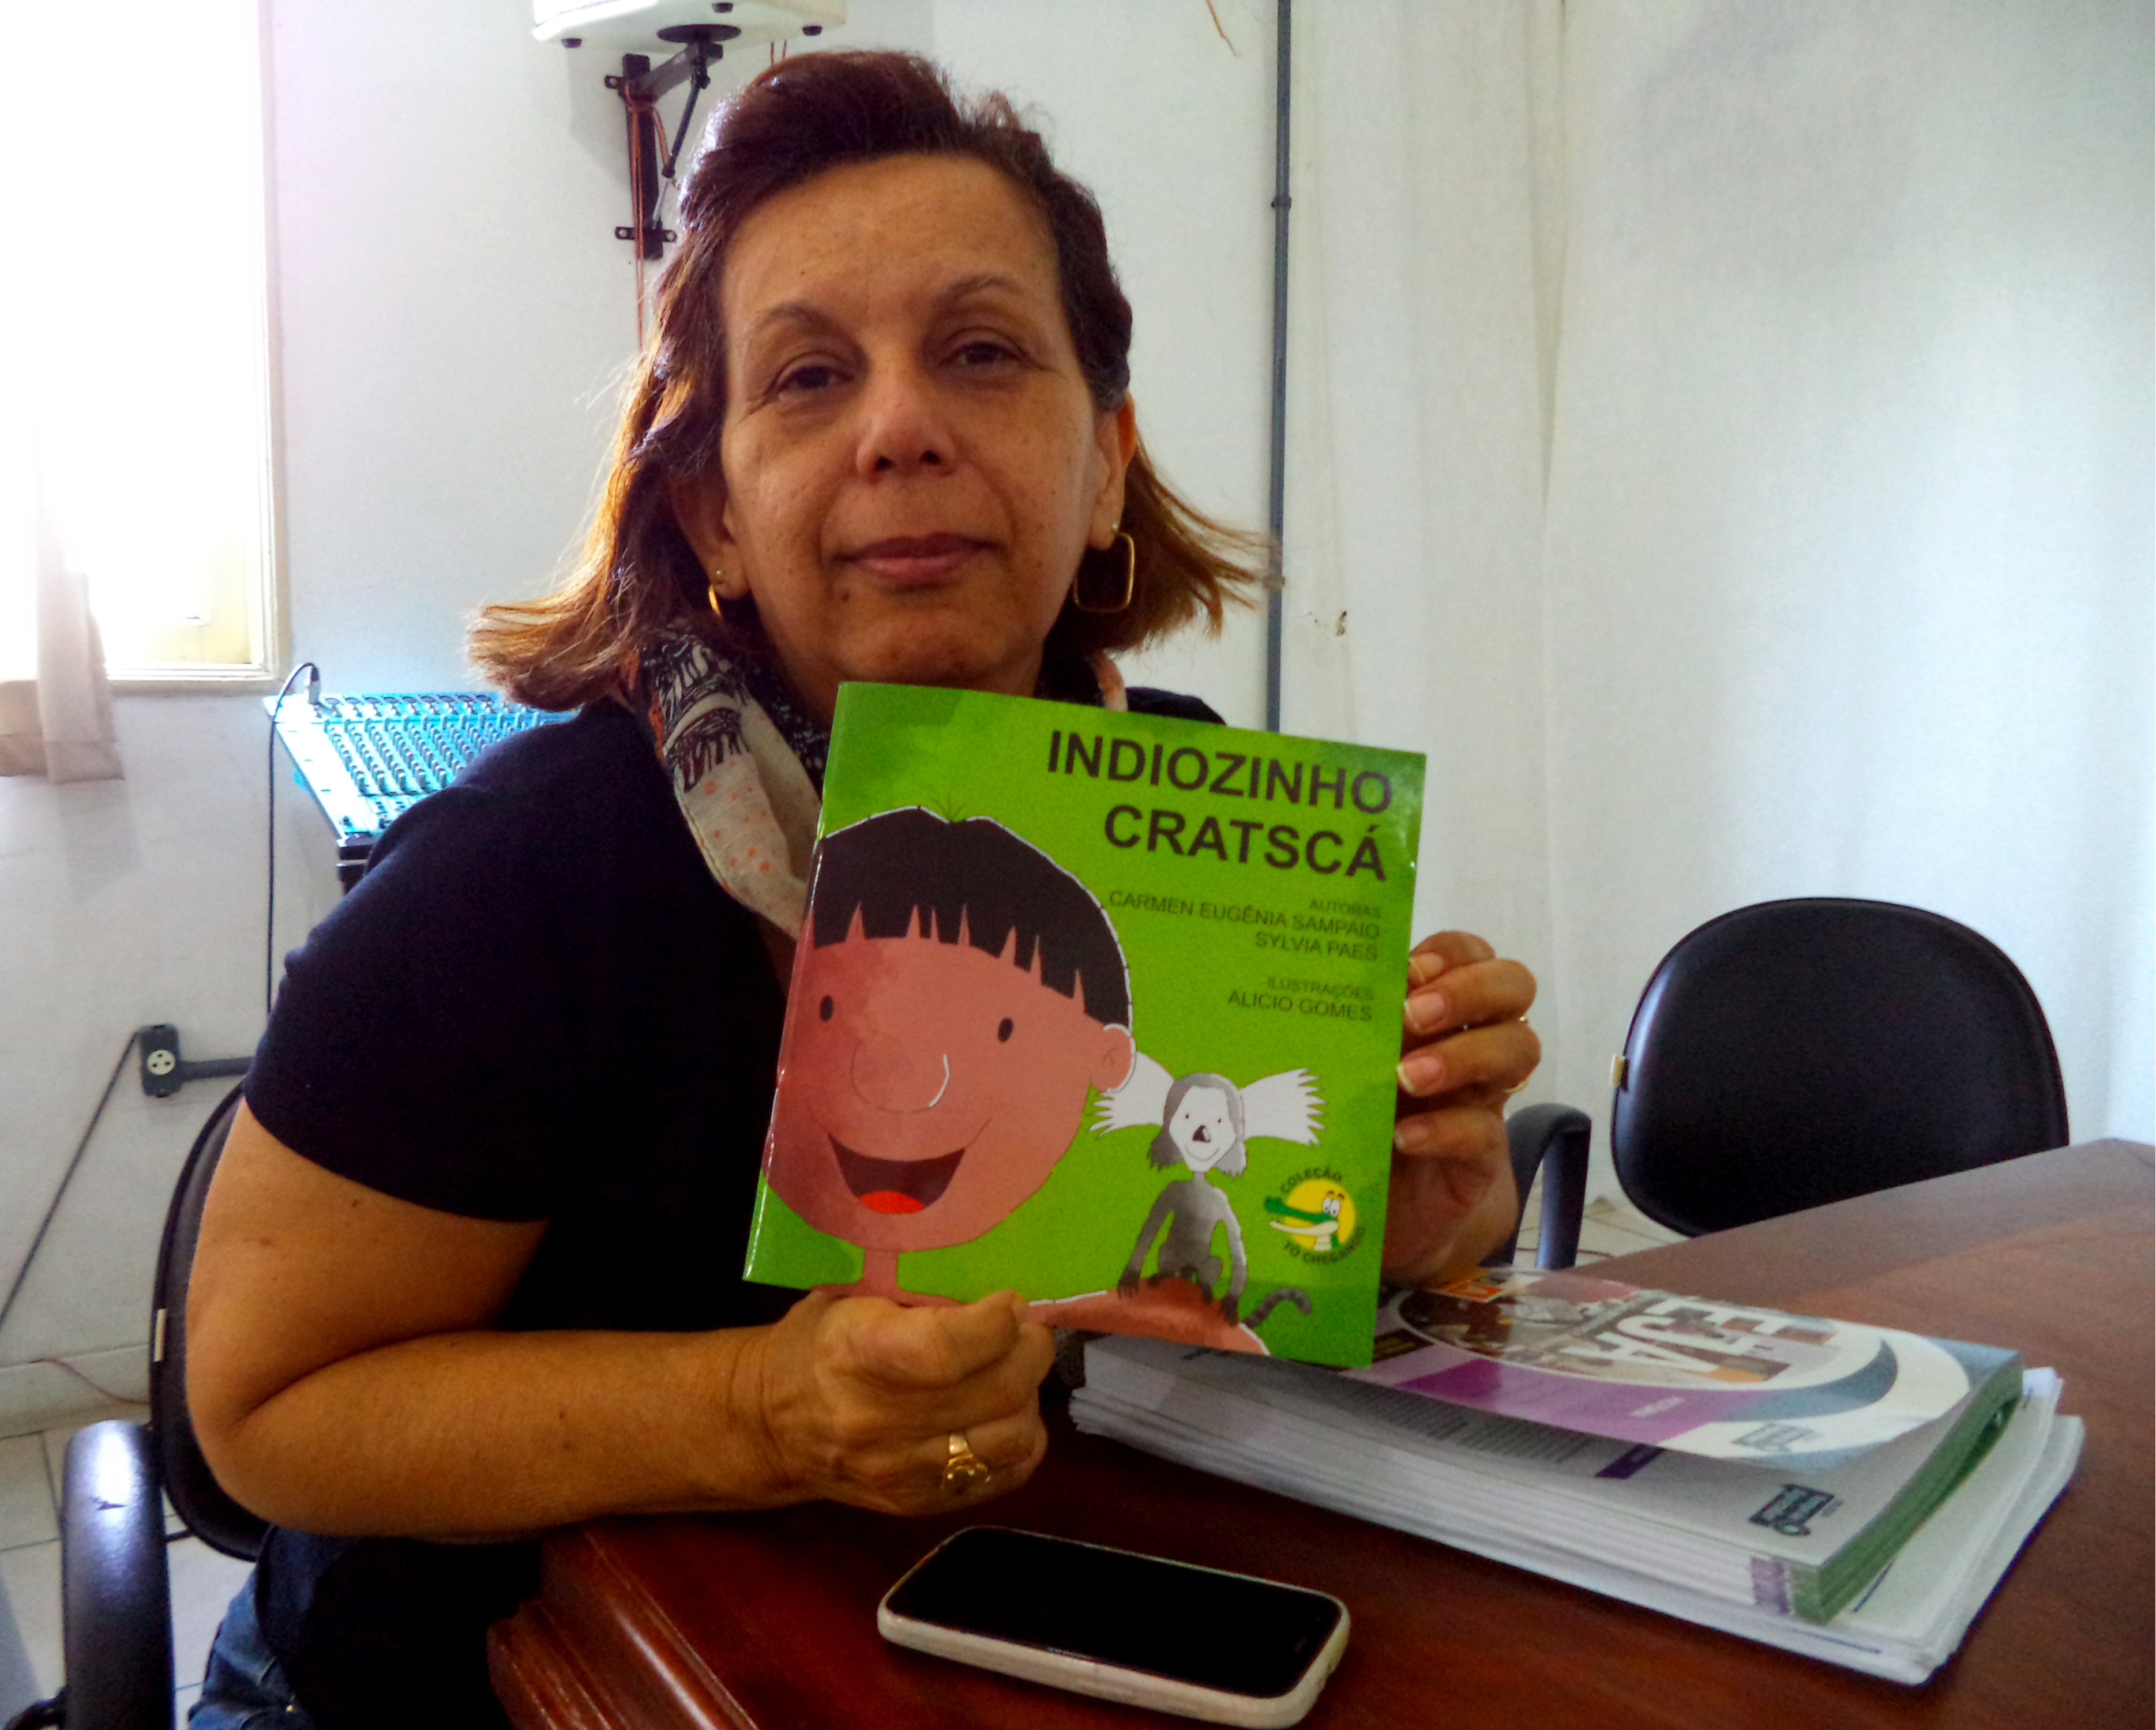 Carmem Sampaio com o livro Indiozinho Cratscá (Foto: Divulgação)